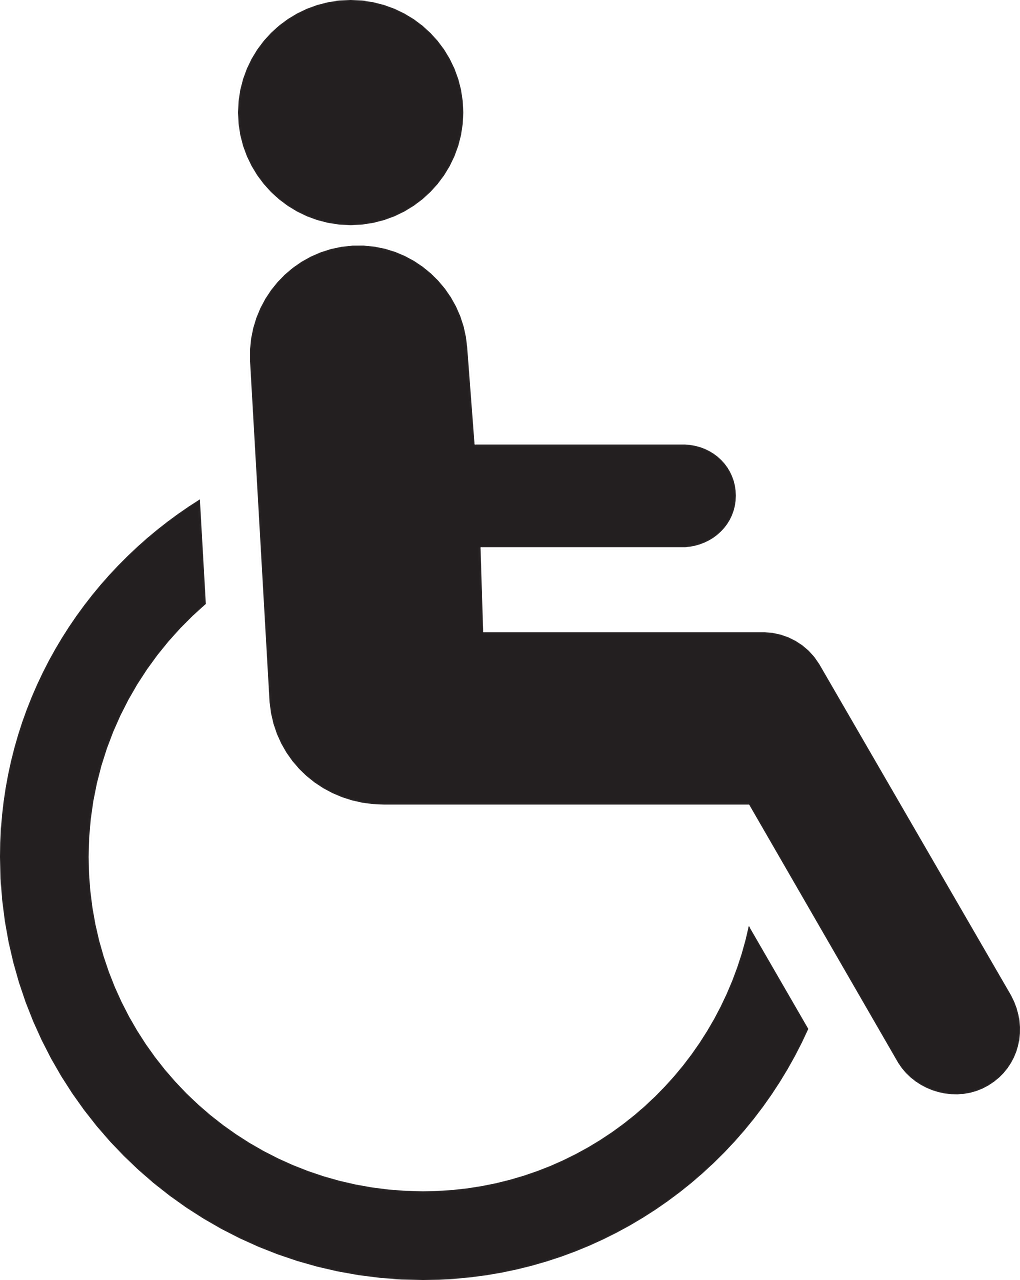 Woonlocatie, Zwieten Gemiva - SVG Groep beoordelingen instelling gehandicaptenzorg verstandelijk gehandicapten